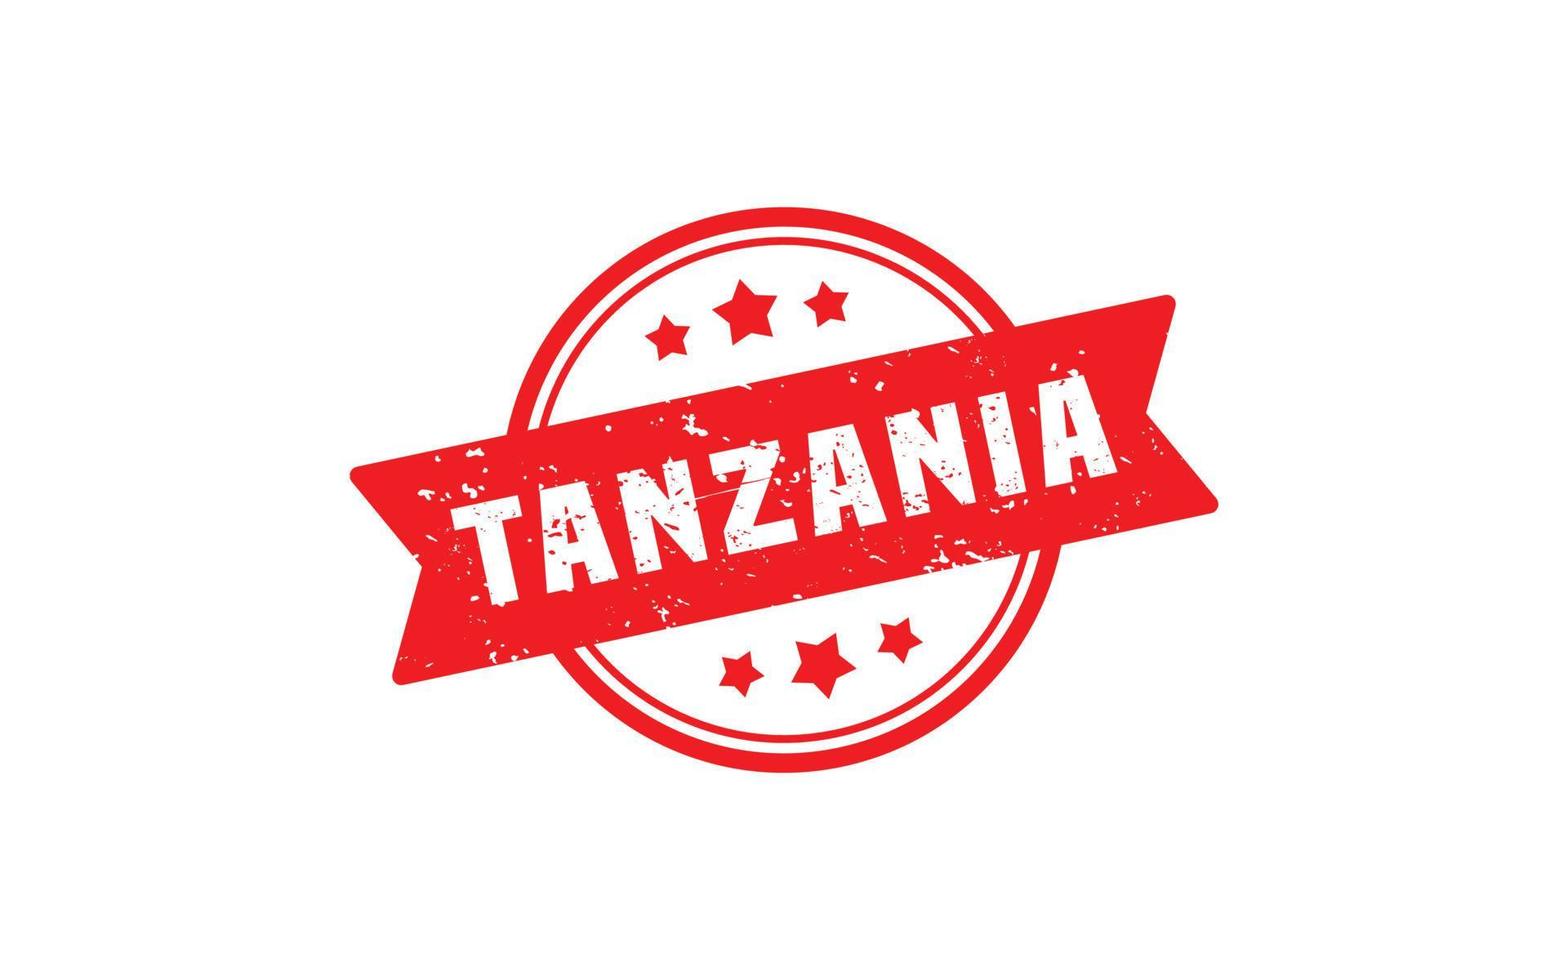 Tansania-Stempel mit Grunge-Stil auf weißem Hintergrund vektor